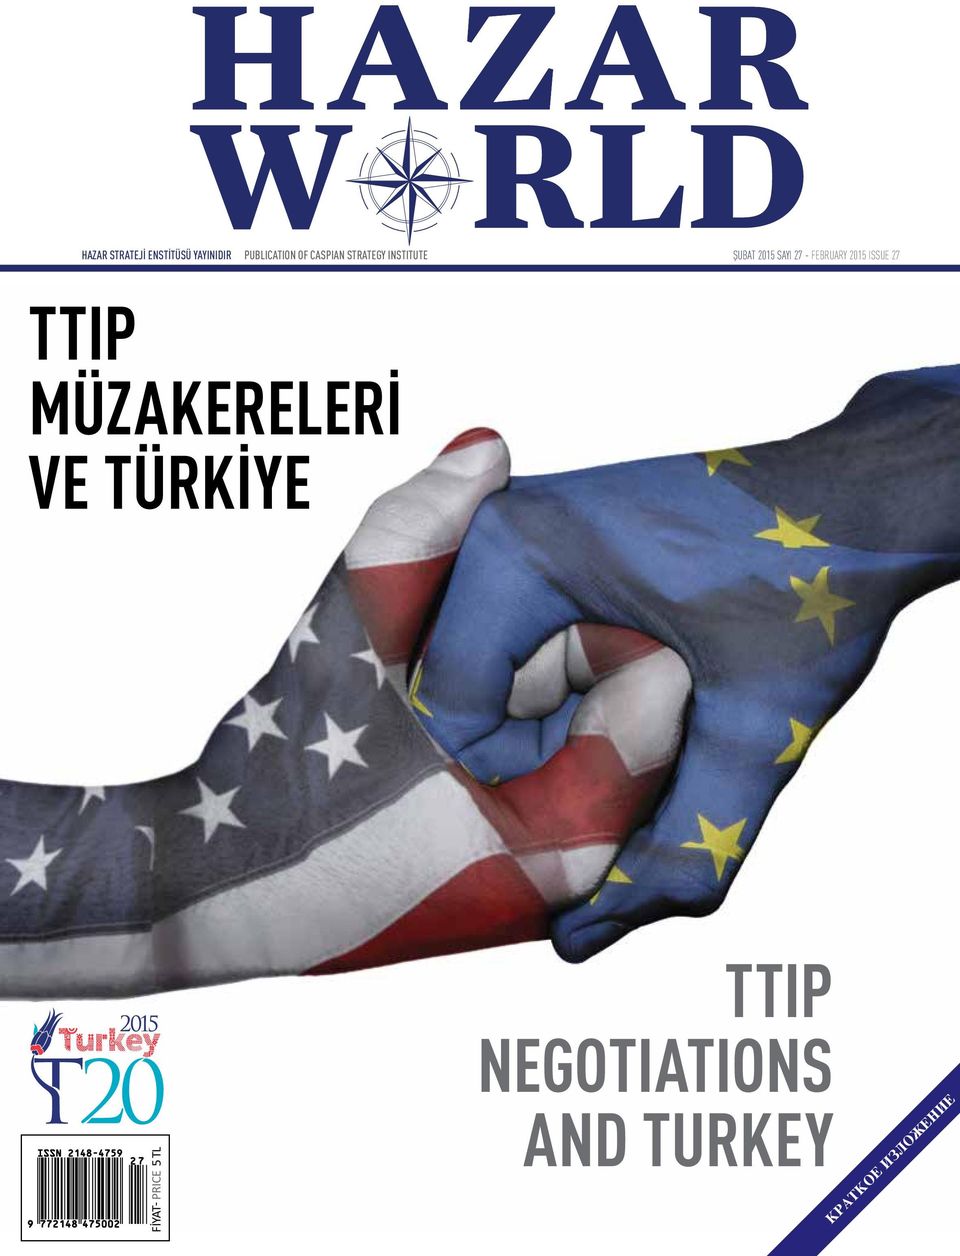 FEBRUARY 2015 ISSUE 27 TTIP MÜZAKERELERİ VE TÜRKİYE